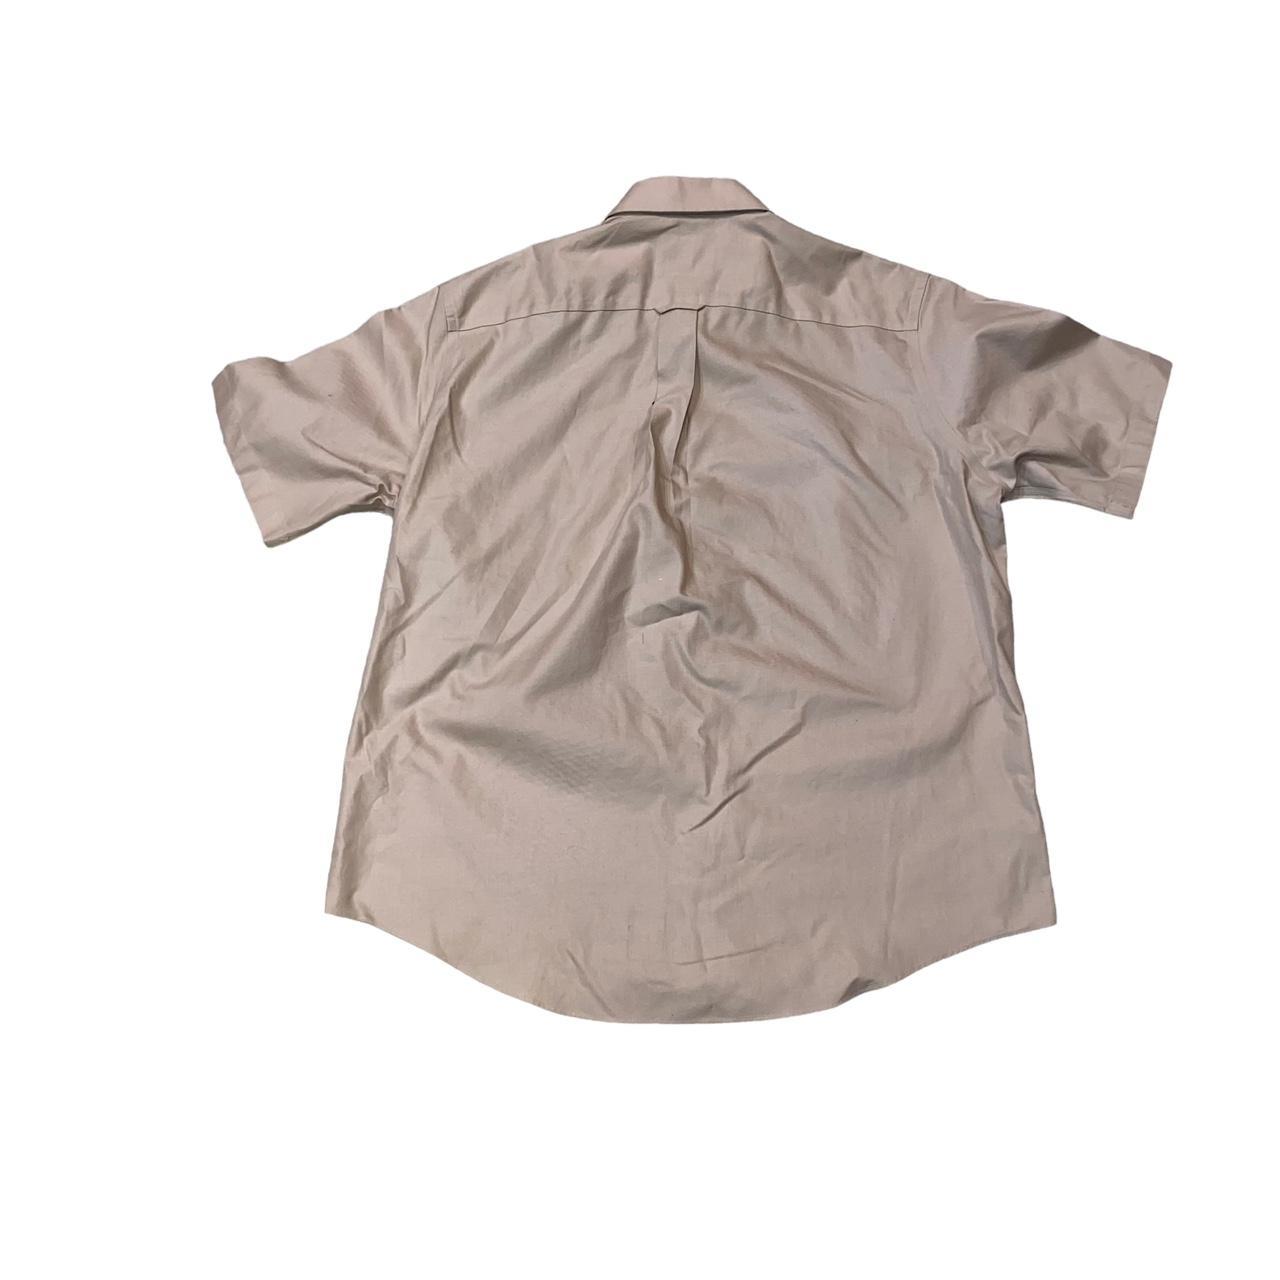 Cabela’s Outfitter Series Short Sleeve Button Shirt... - Depop